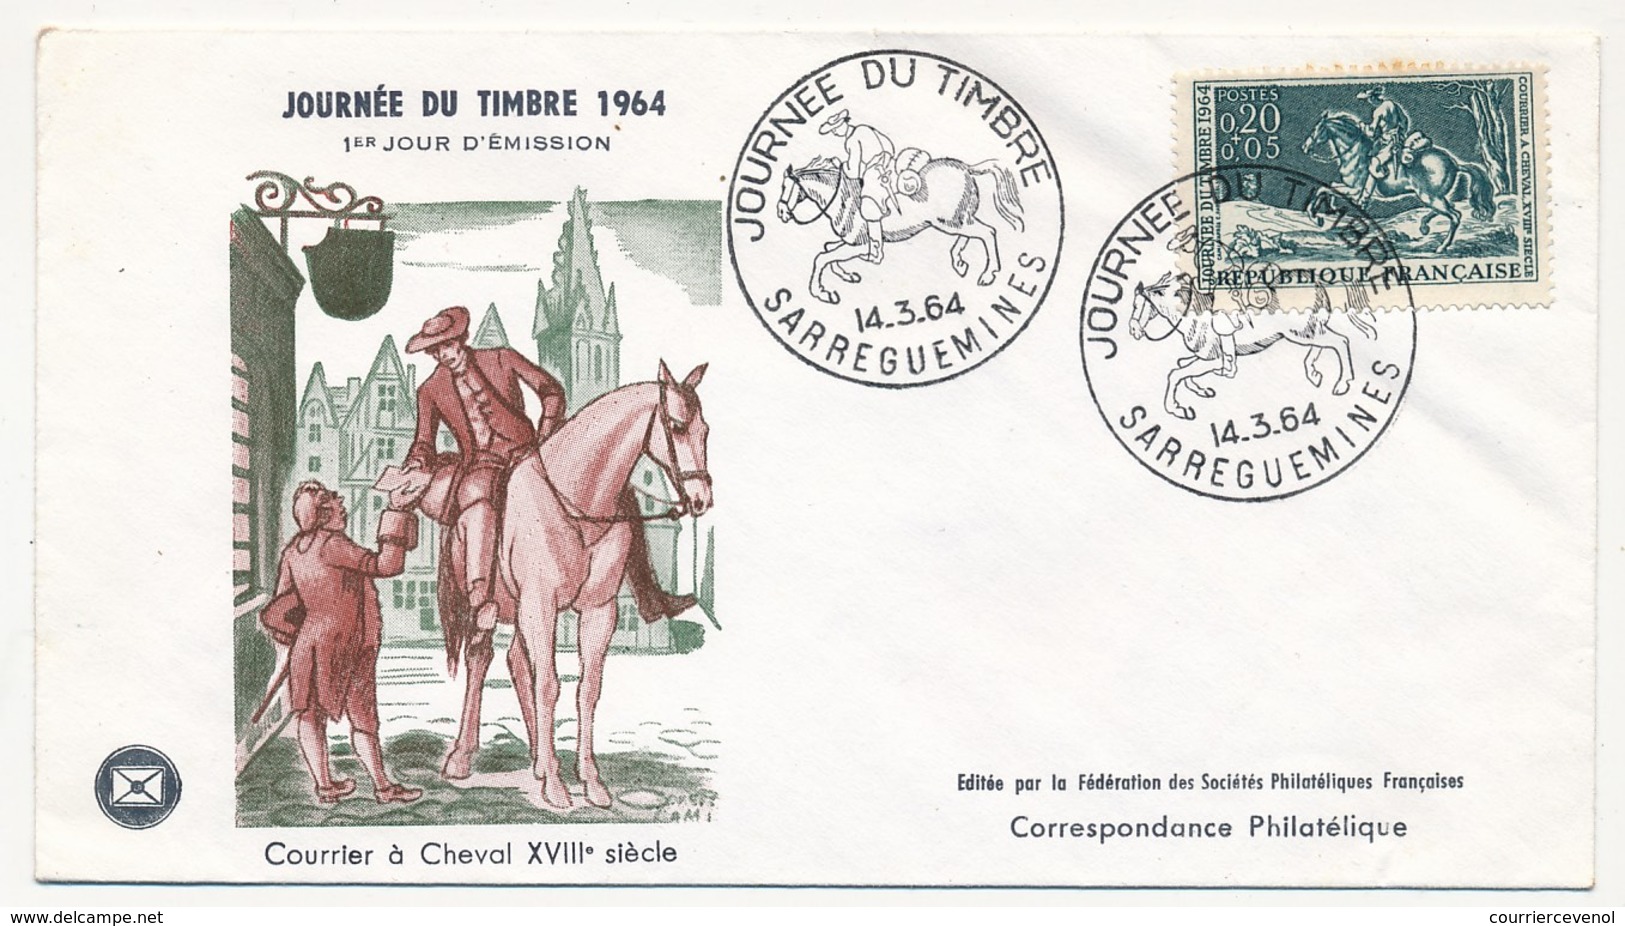 FRANCE - Enveloppe FDC - Journée Du Timbre 1964 (Courrier à Cheval XVIIIeme Siècle) - SARREGUEMINES 14.3.1964 - Dag Van De Postzegel